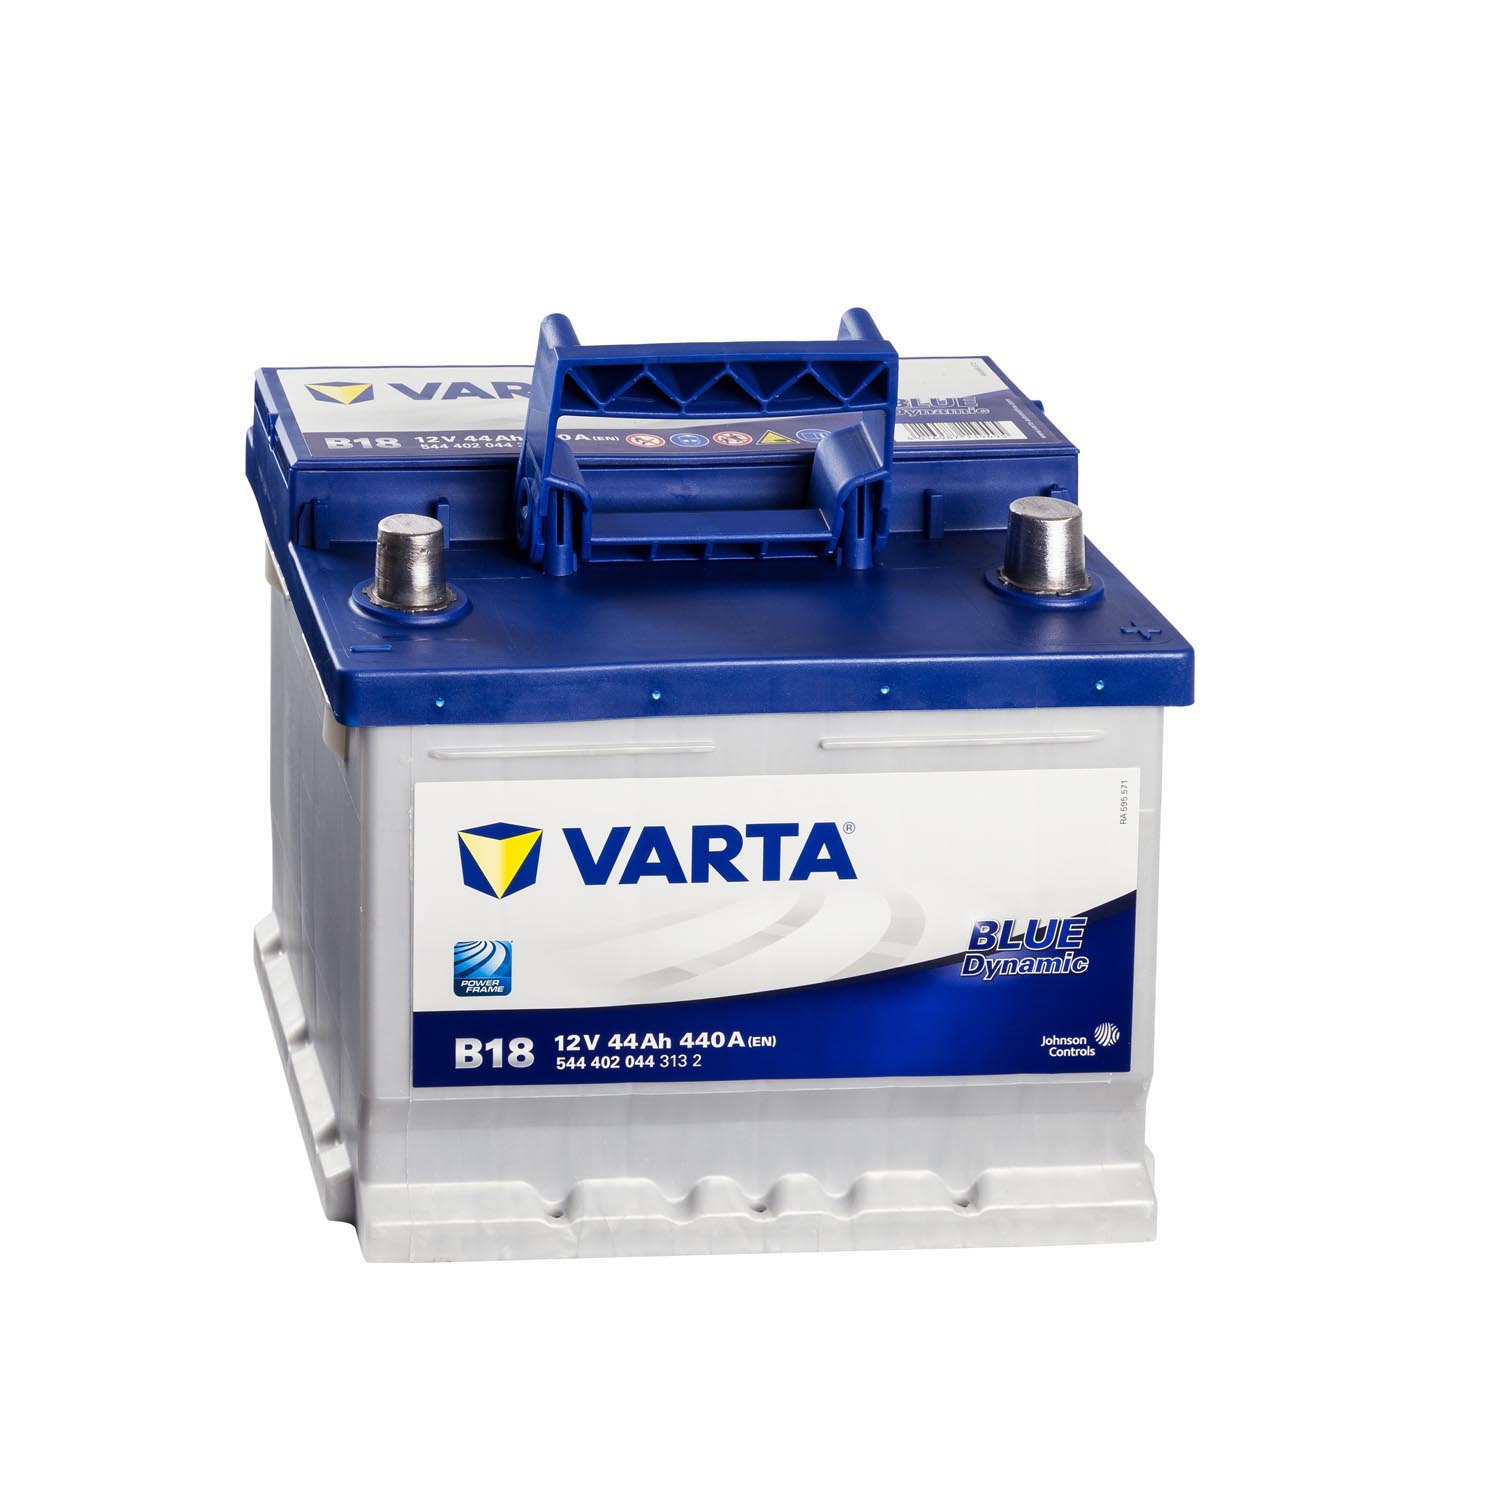 B18 Varta Blue Dynamic Car Battery 12V 44Ah (544402044) (063)